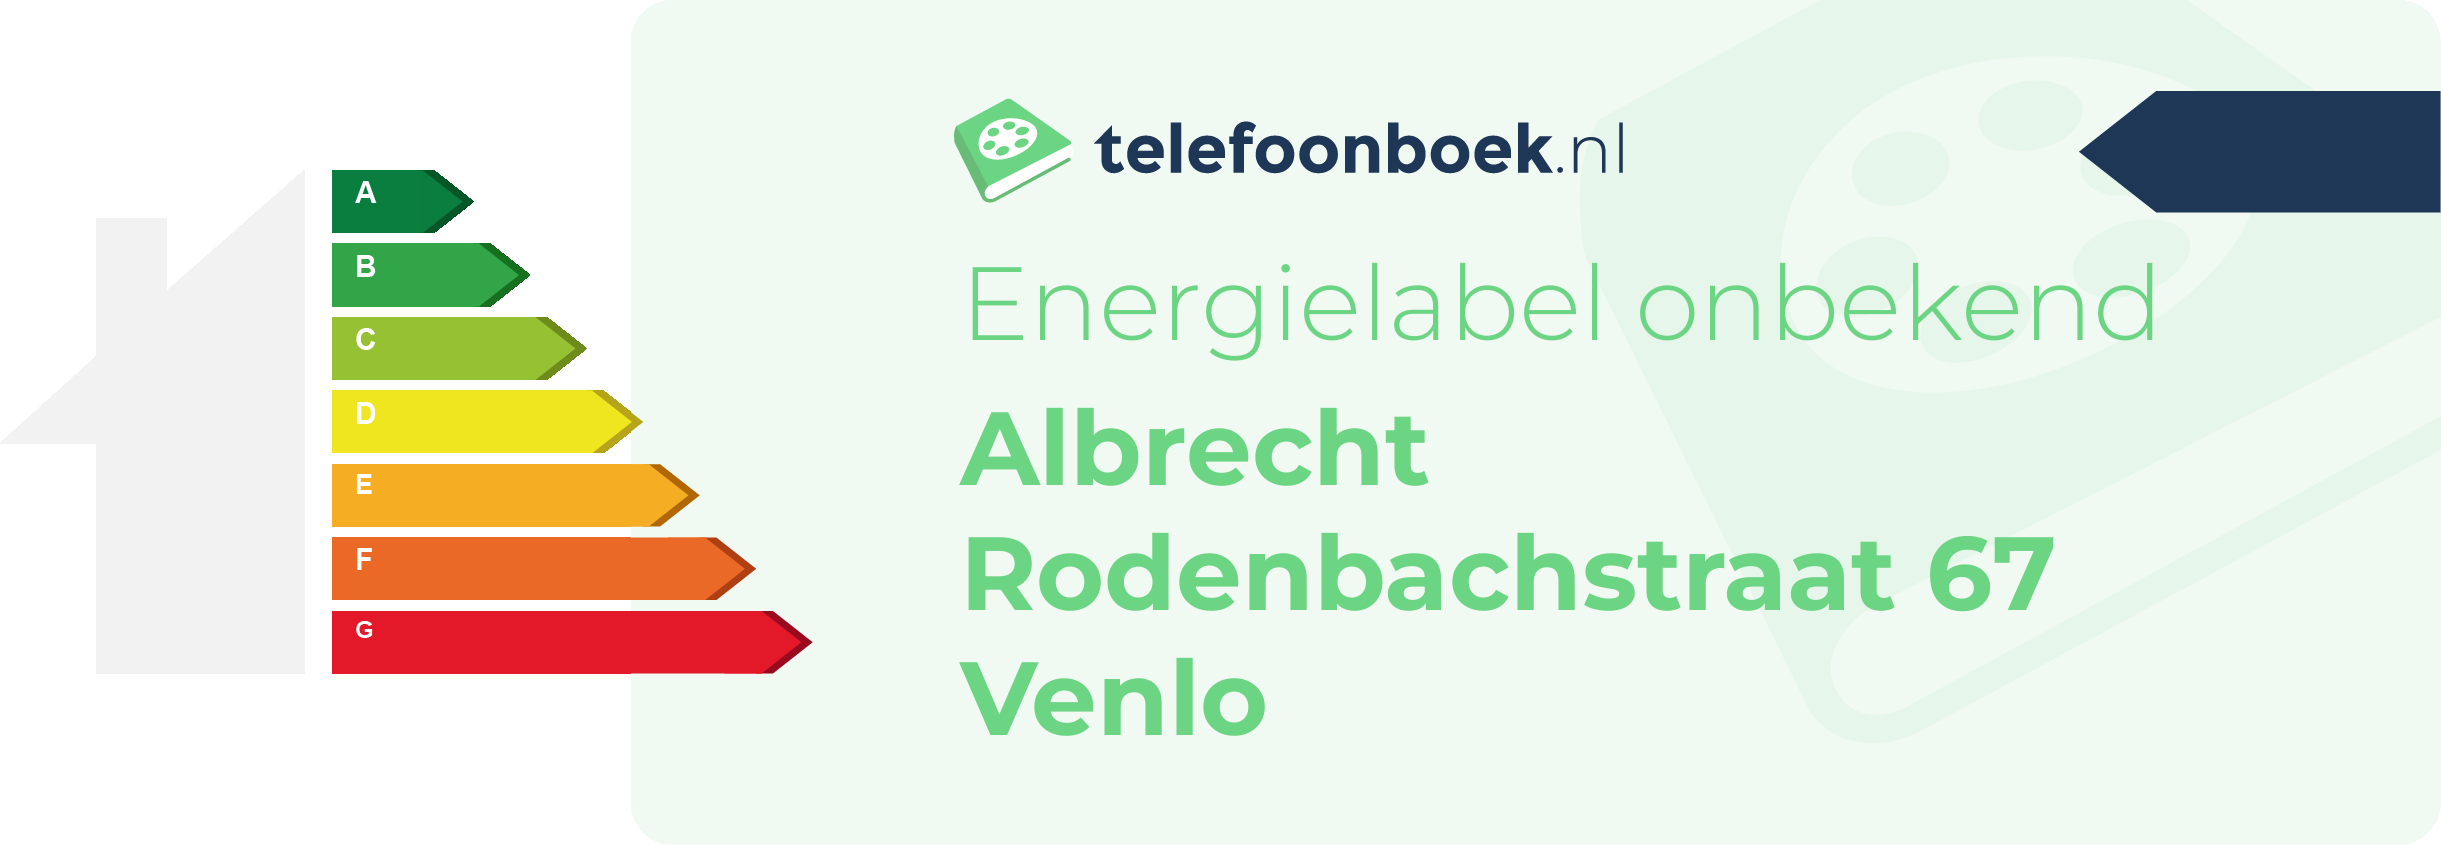 Energielabel Albrecht Rodenbachstraat 67 Venlo